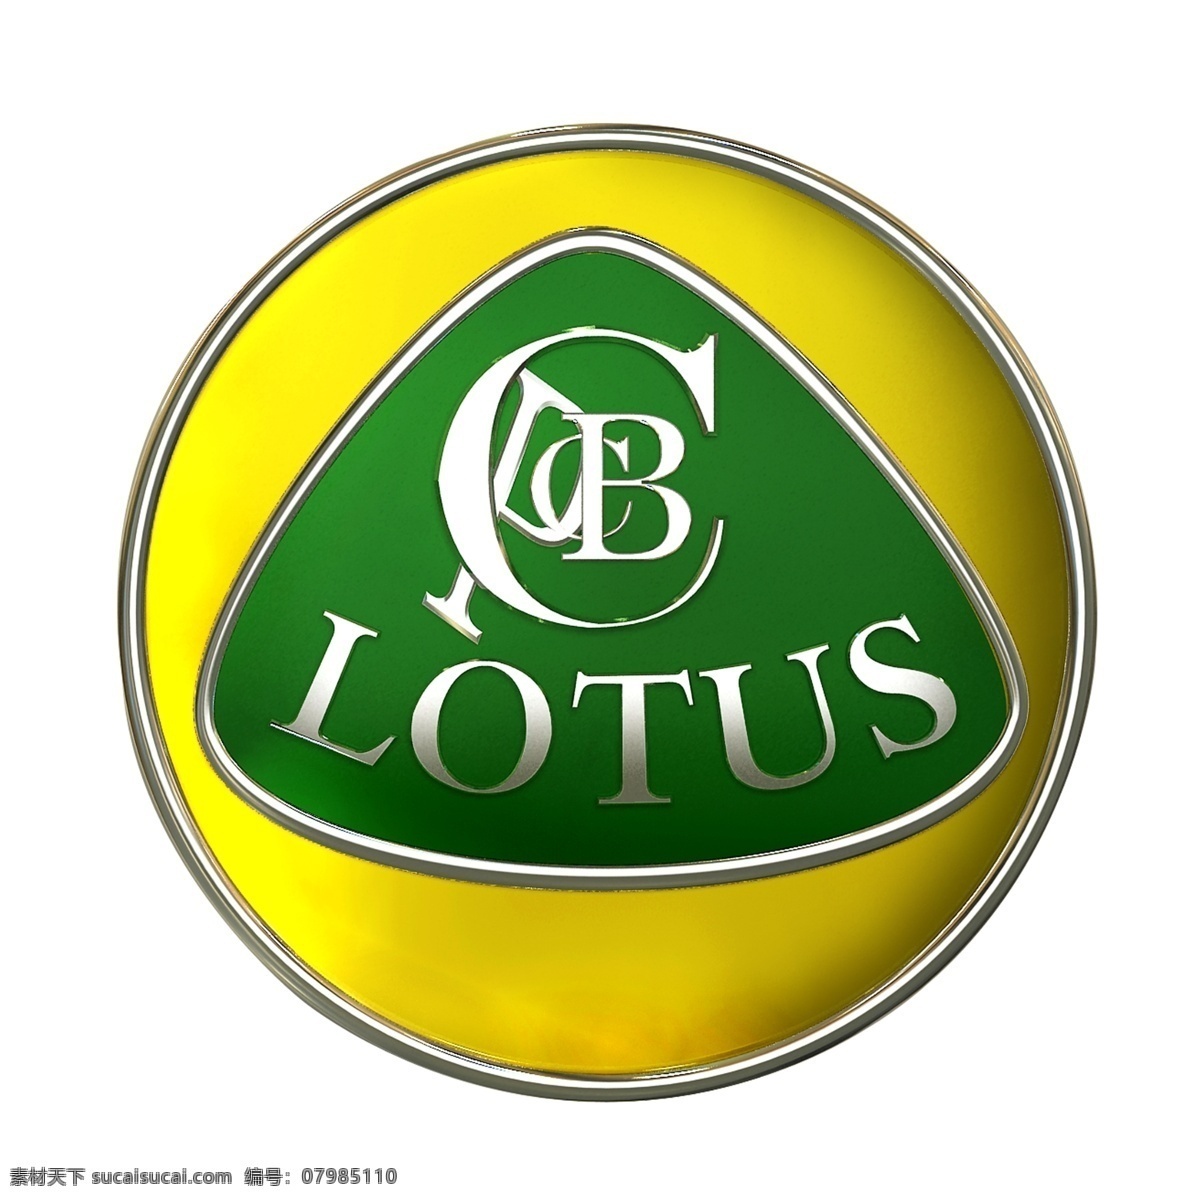 lotus 莲花 跑车 矢量 标志 矢量标志 logo 图标 共享 标识 矢量圆形标志 全球汽车品牌 全球汽车 品牌矢量 psd源文件 logo设计